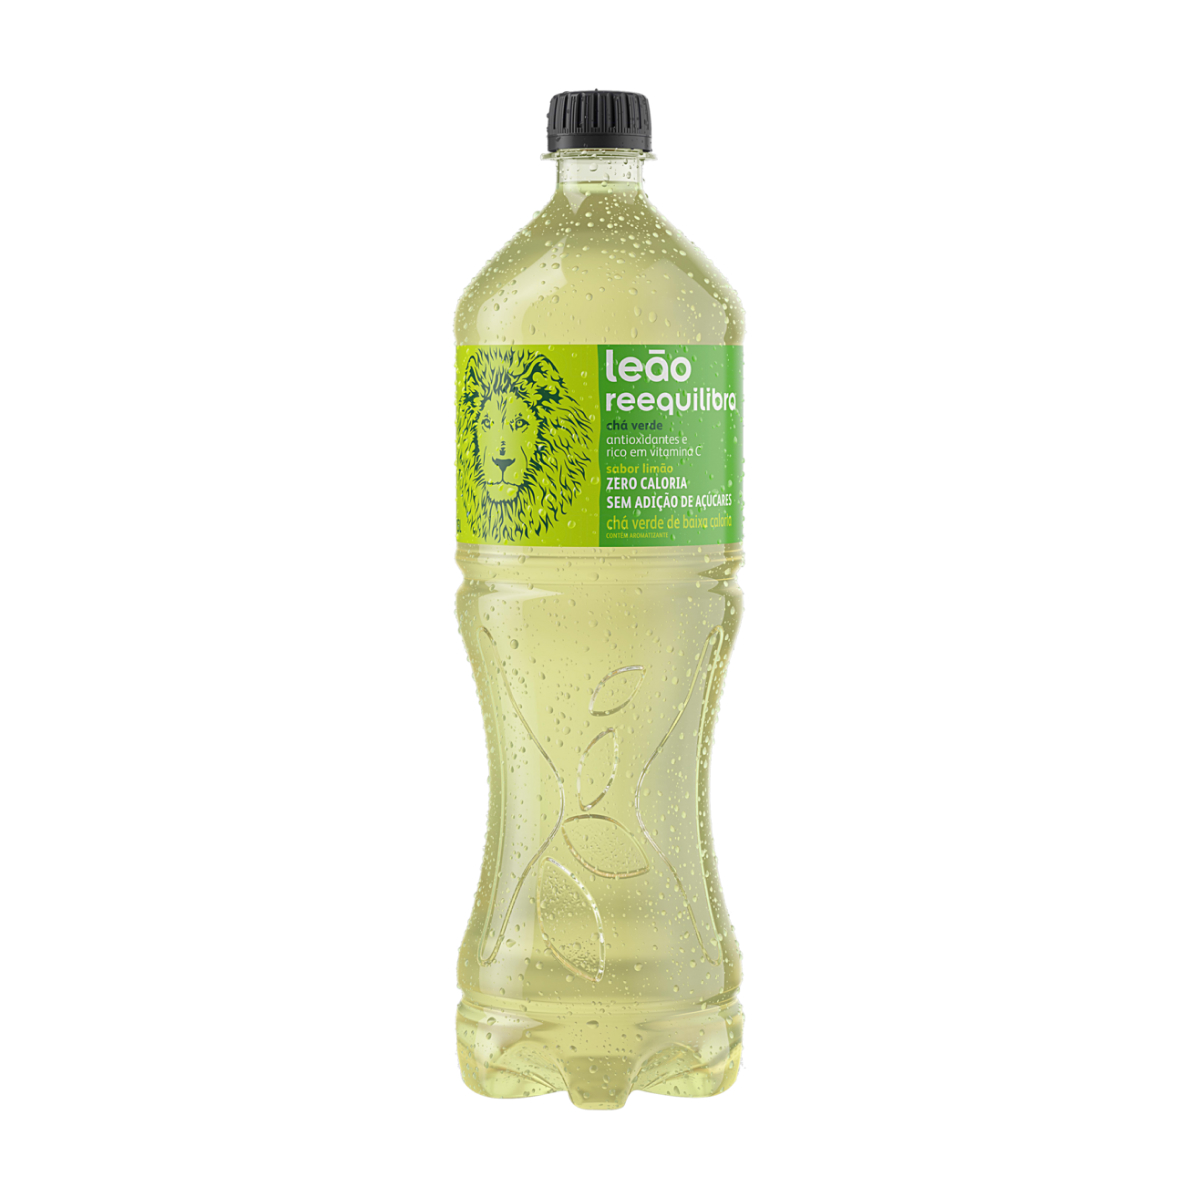 Uma garrafa de refrigerante de Chás Leão em um fundo branco